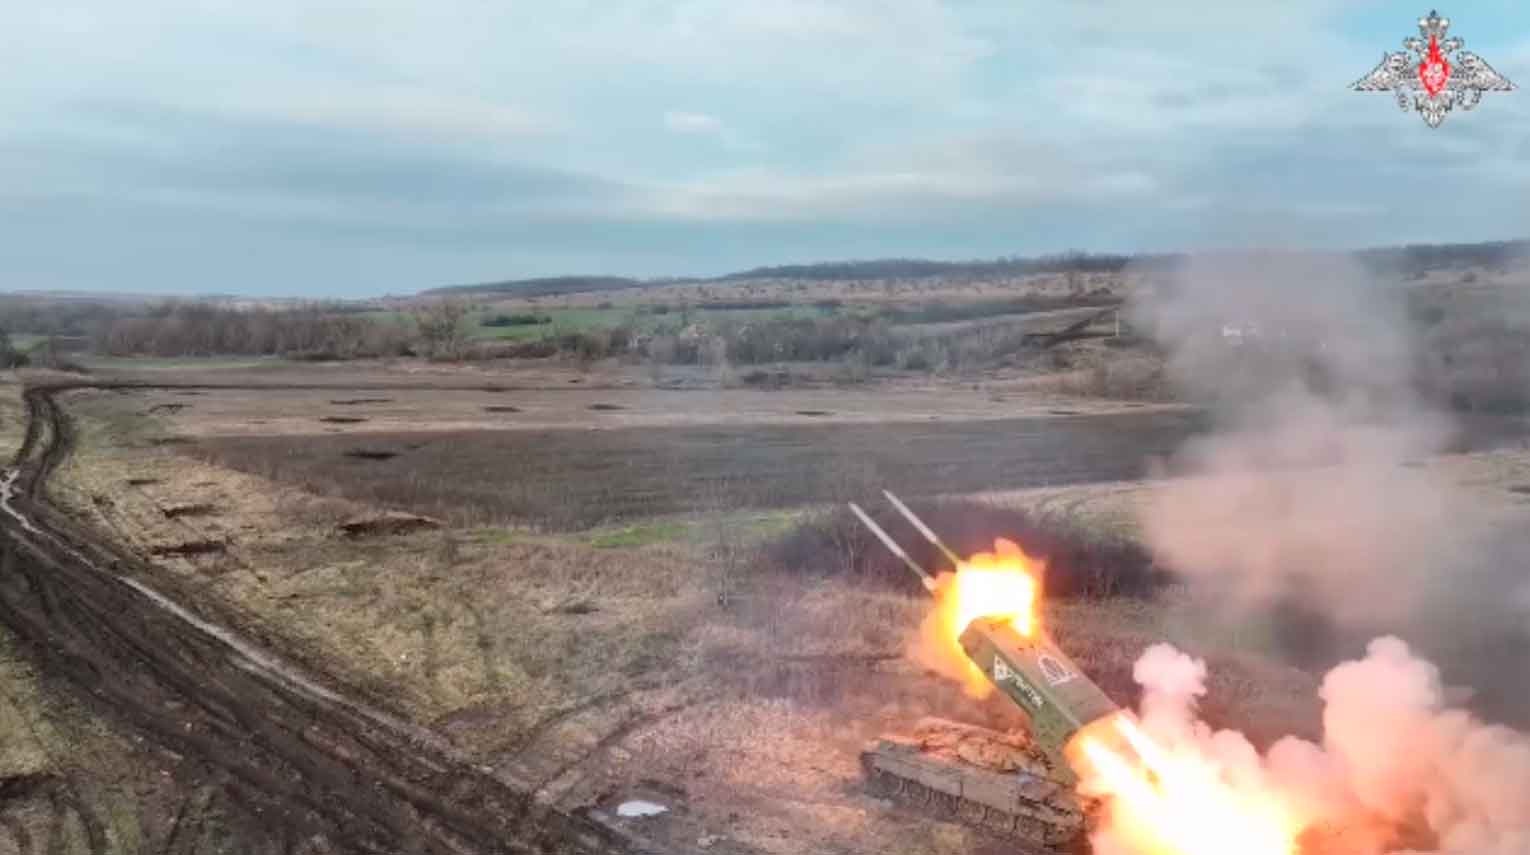 VÍDEO: Rússia aciona sistemas TOS-1A contra Exército ucraniano em Carcóvia